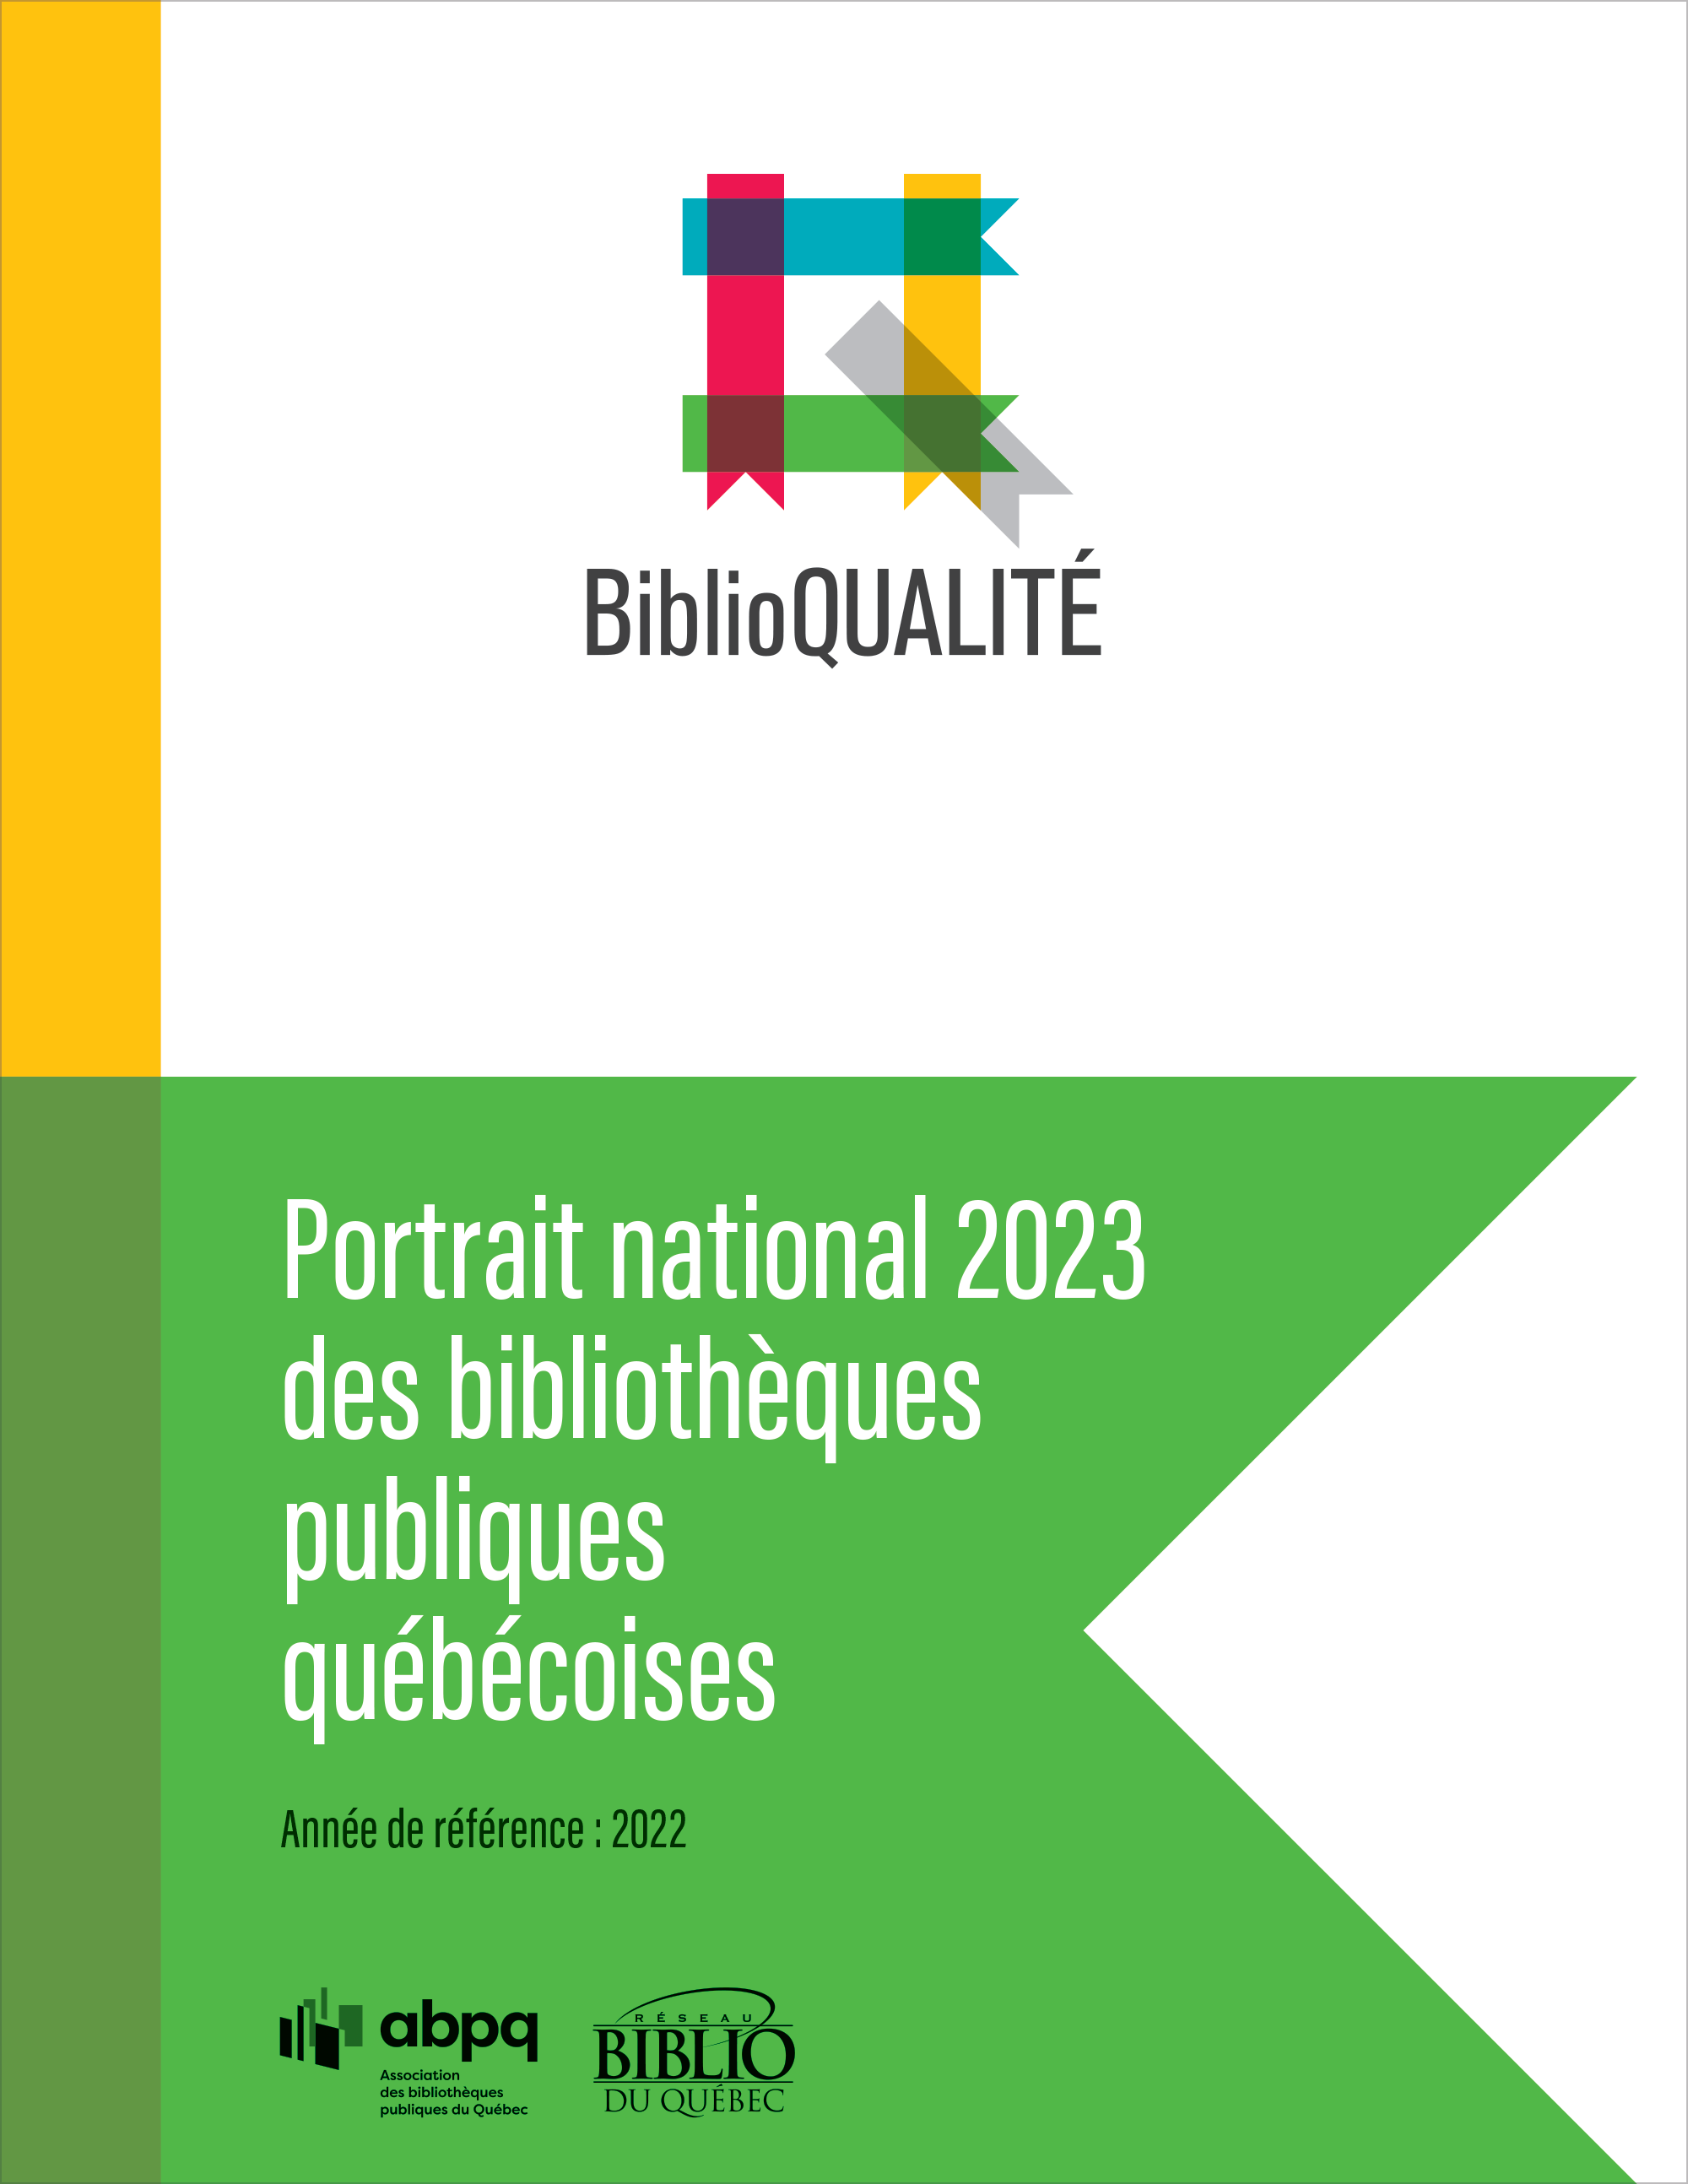 Biblio-Jeux  ABPQ - Association des bibliothèques publiques du Québec